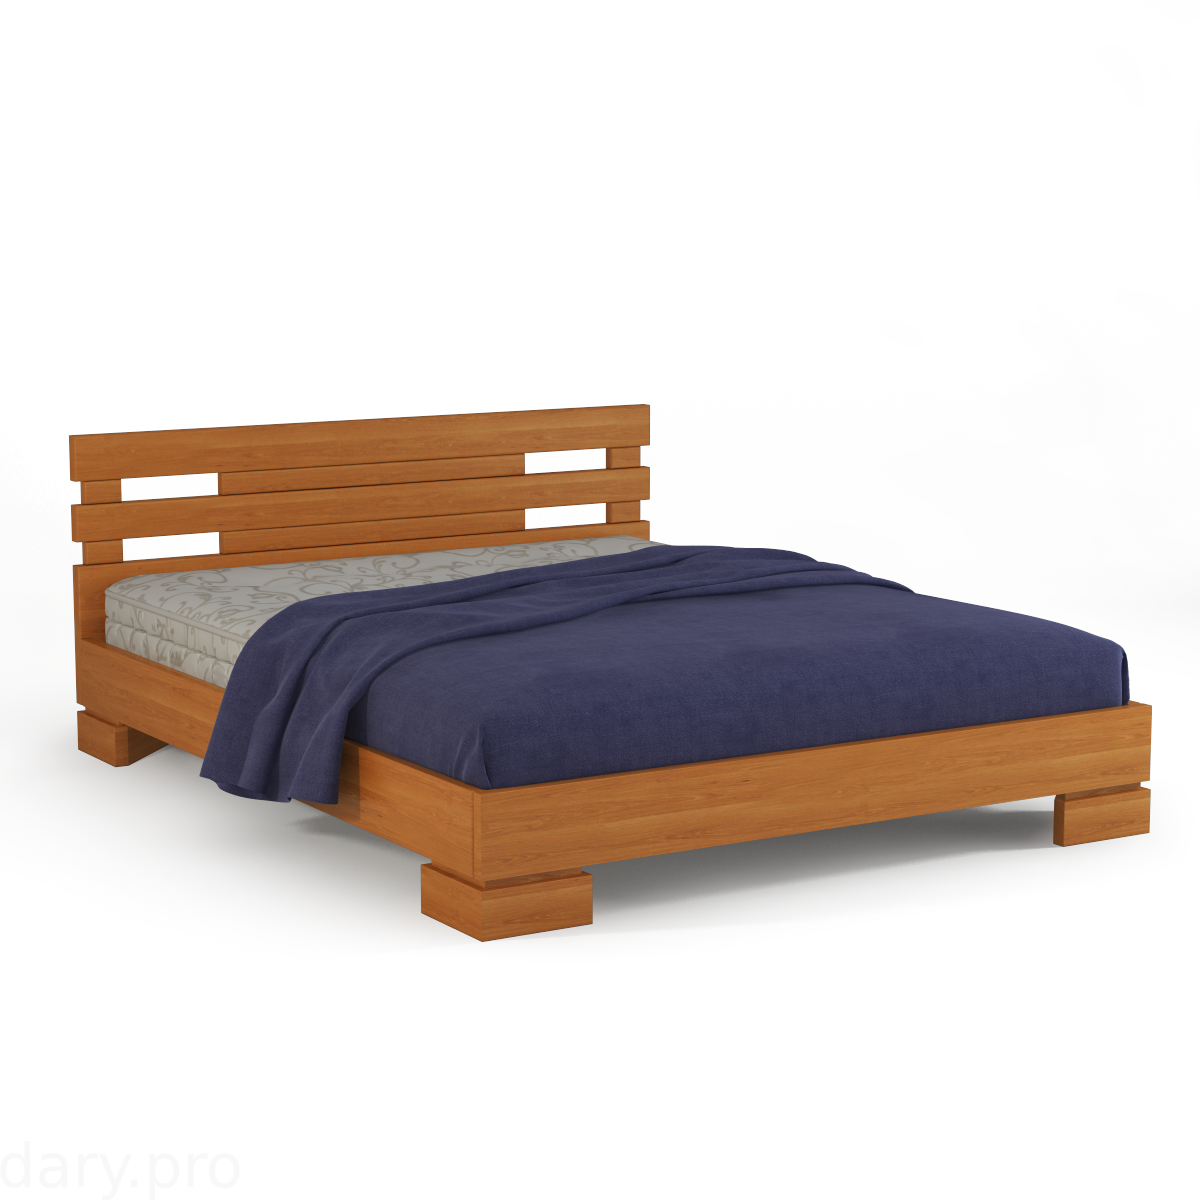 Кровать из массива бука